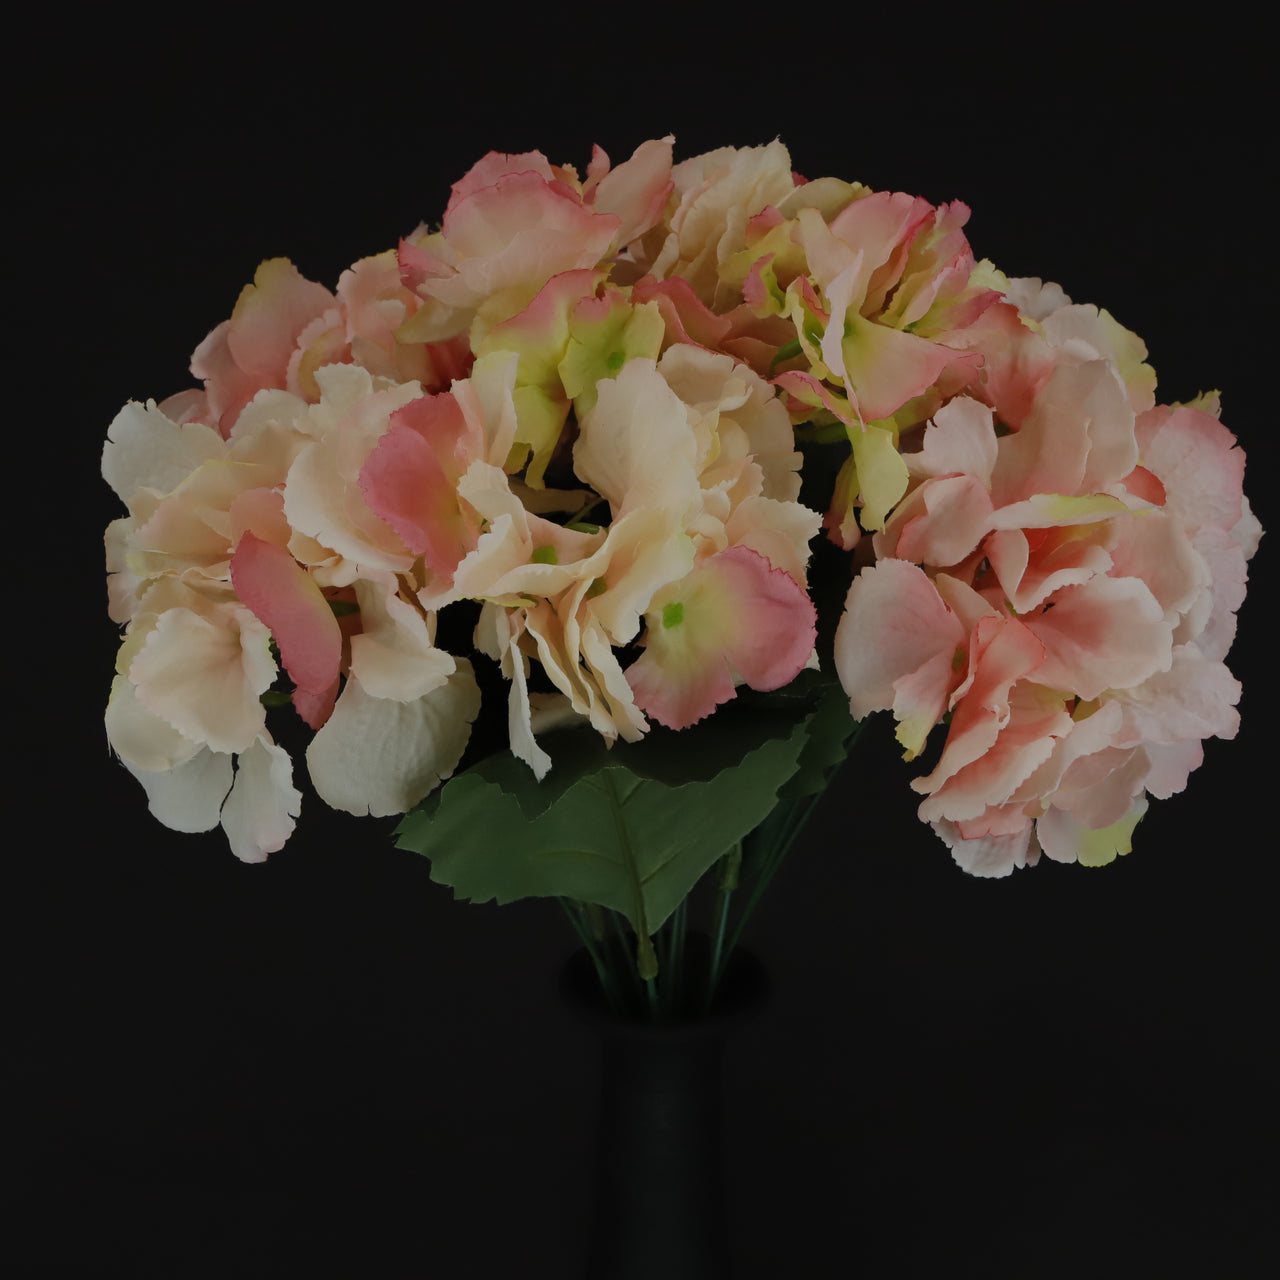 HCFL5988 - Mixed Pink Hydrangea Bouquet